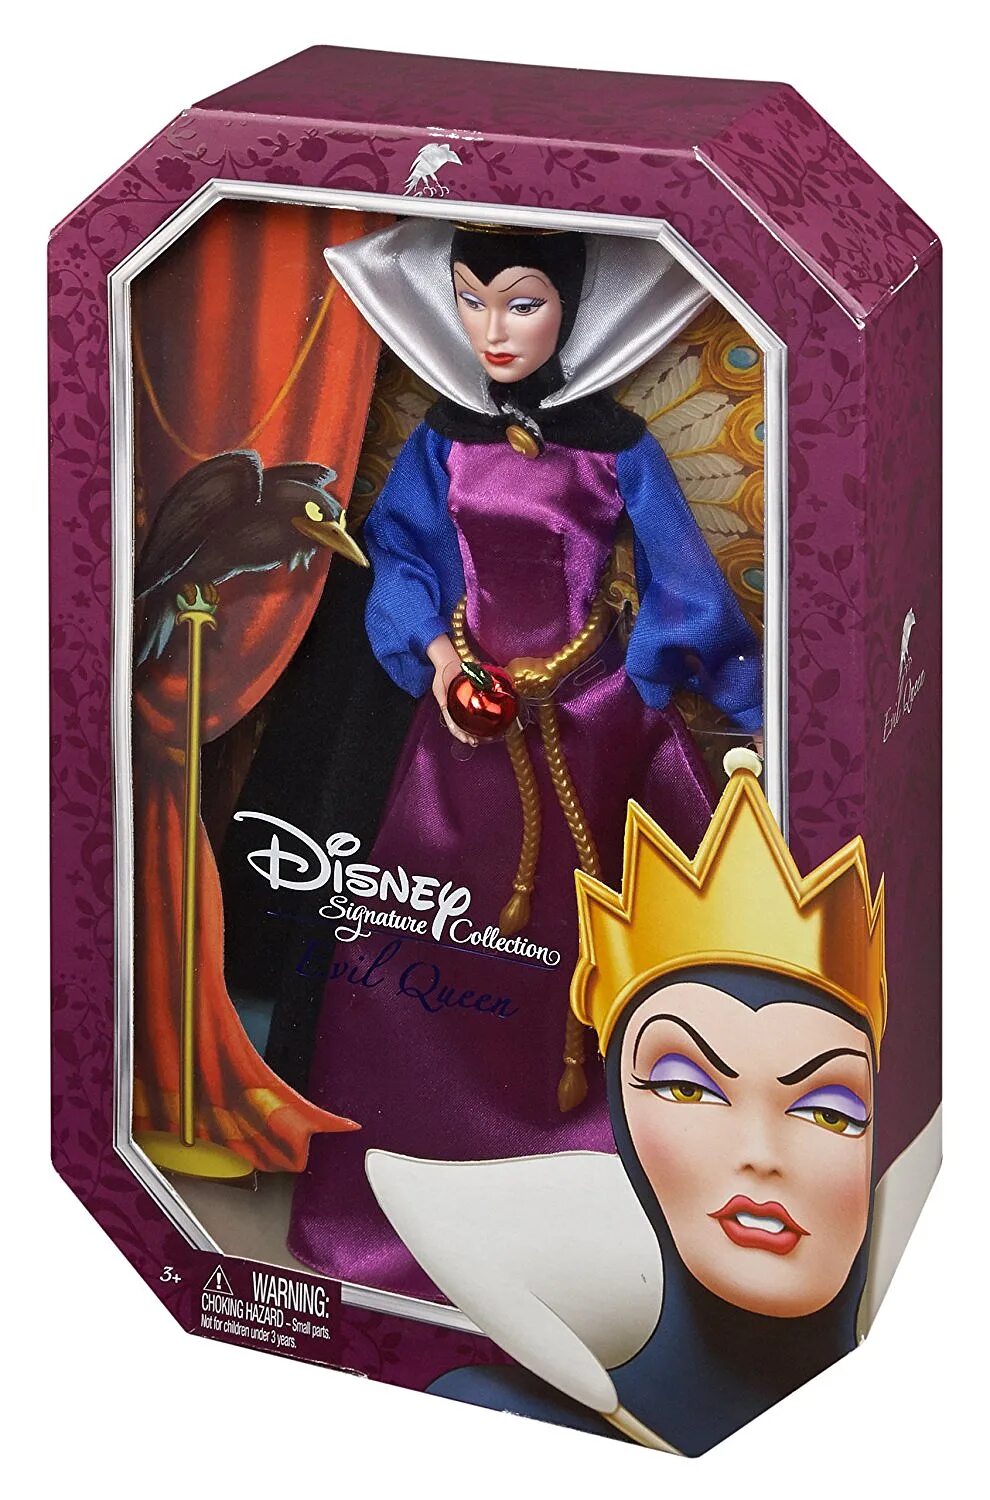 Кукла Mattel Signature collection злая Королева, 29 см, bdj33. Дисней злодейки куклы злая Королева. Disney Villains злая Королева. Кукла Хасбро злая Королева. Белоснежка цена